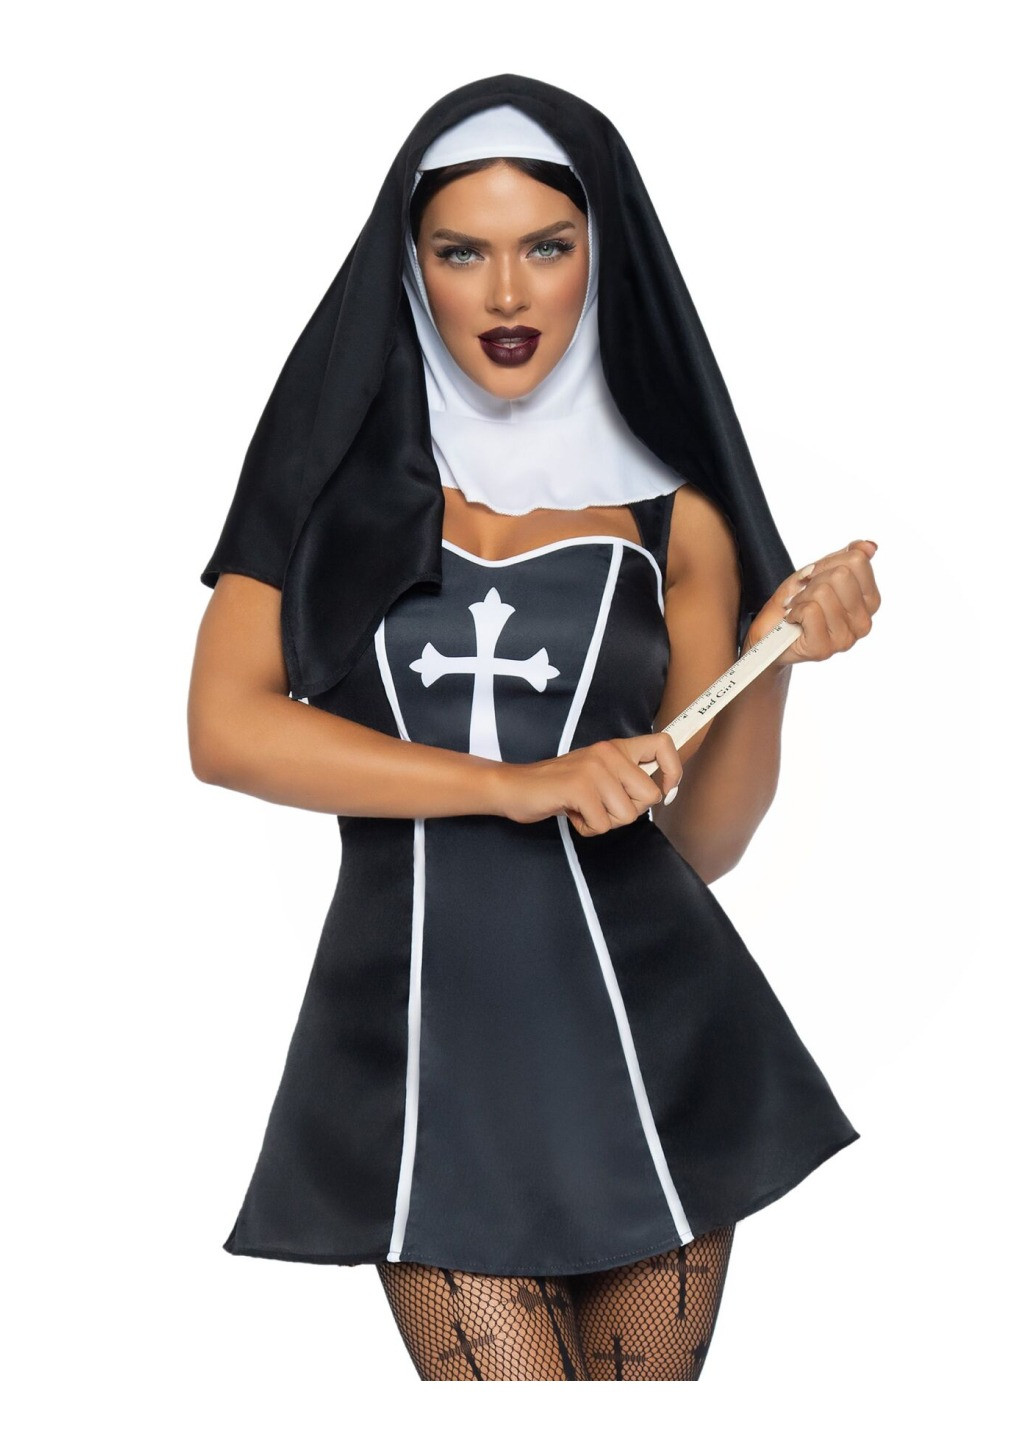 Прозорий демісезонний костюм черниці naughty nun xs, сукня, головний убір Leg Avenue